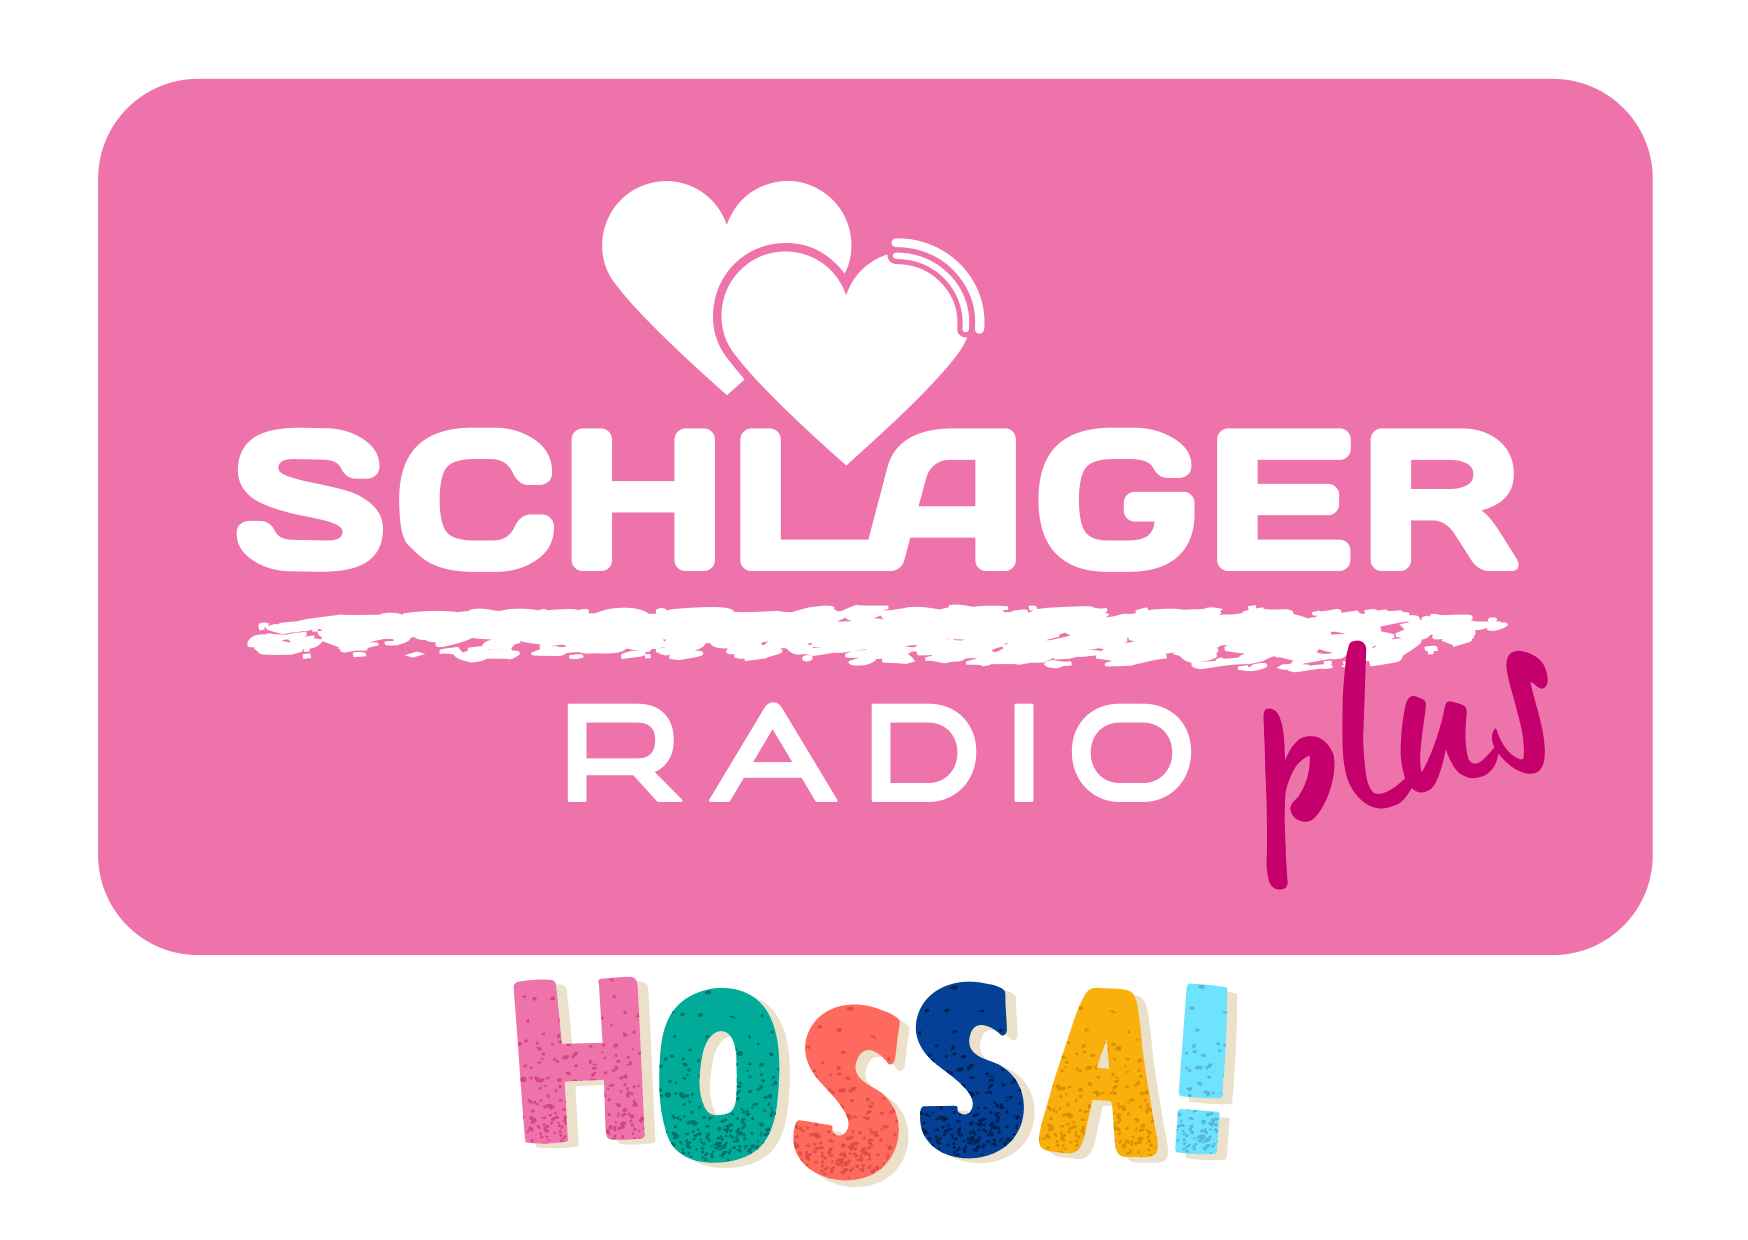 Das Bild zeigt das Logo von Schlager Radio plus - Hossa!